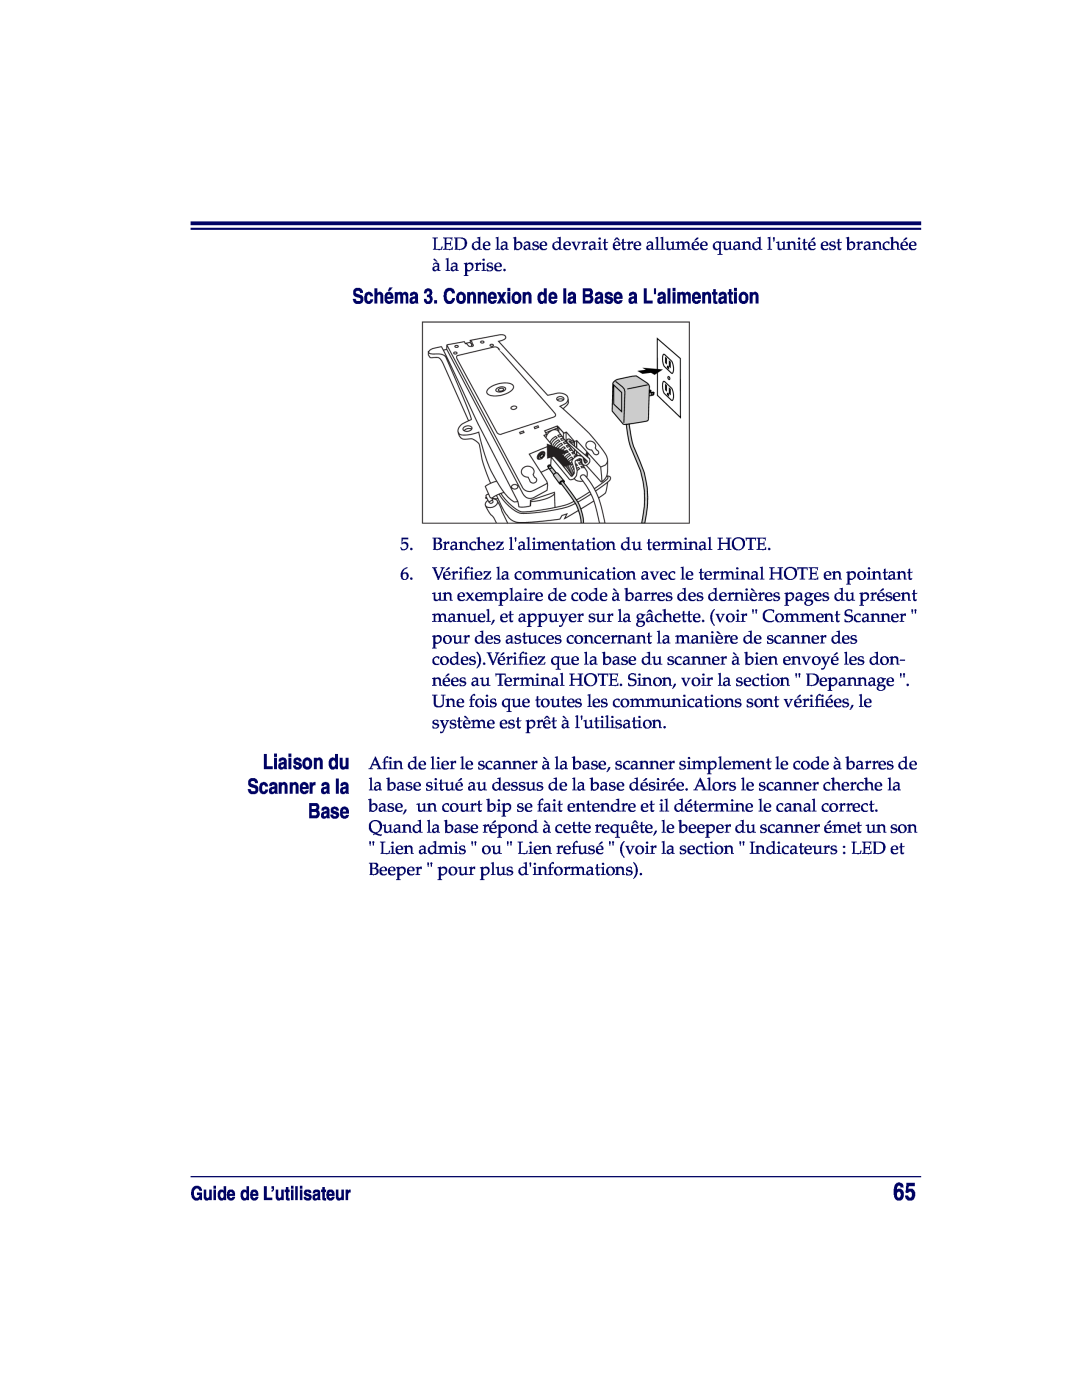 Datalogic Scanning XLR, SR, HD manual Schéma 3. Connexion de la Base a Lalimentation, Liaison du Scanner a la Base 